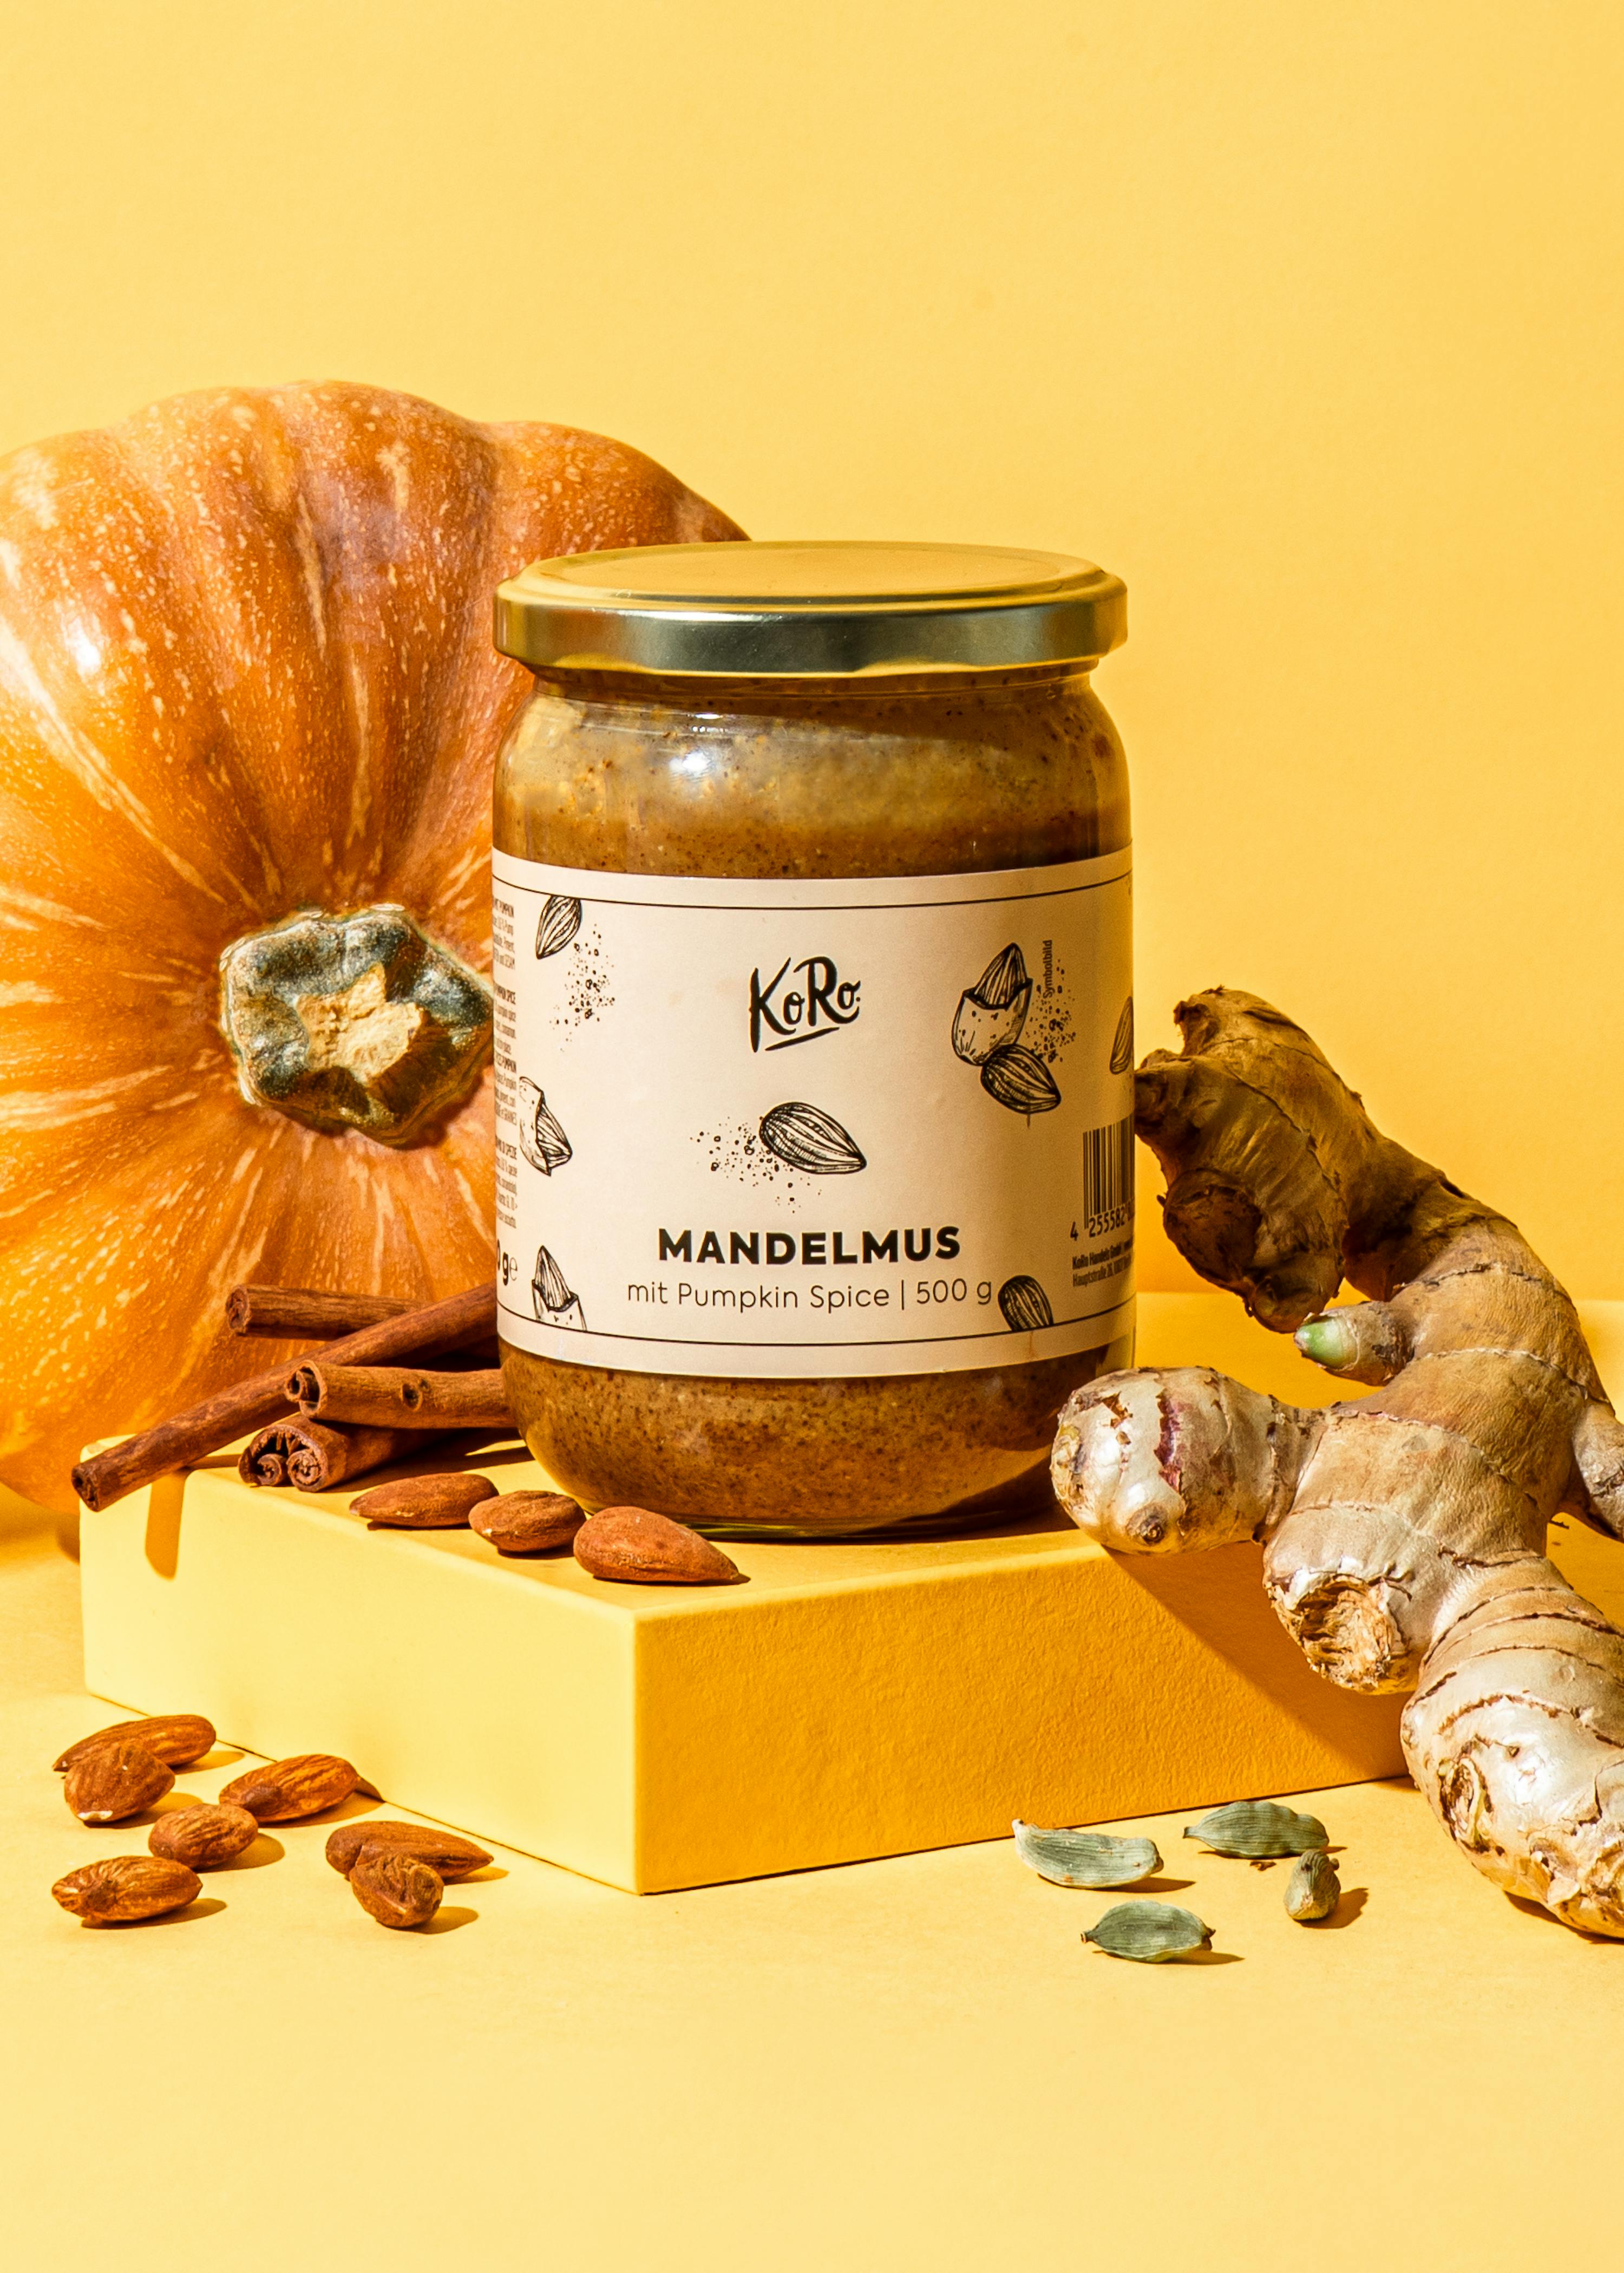 Das Highlight im Herbst: Mandelmus mit Pumpkin Spice